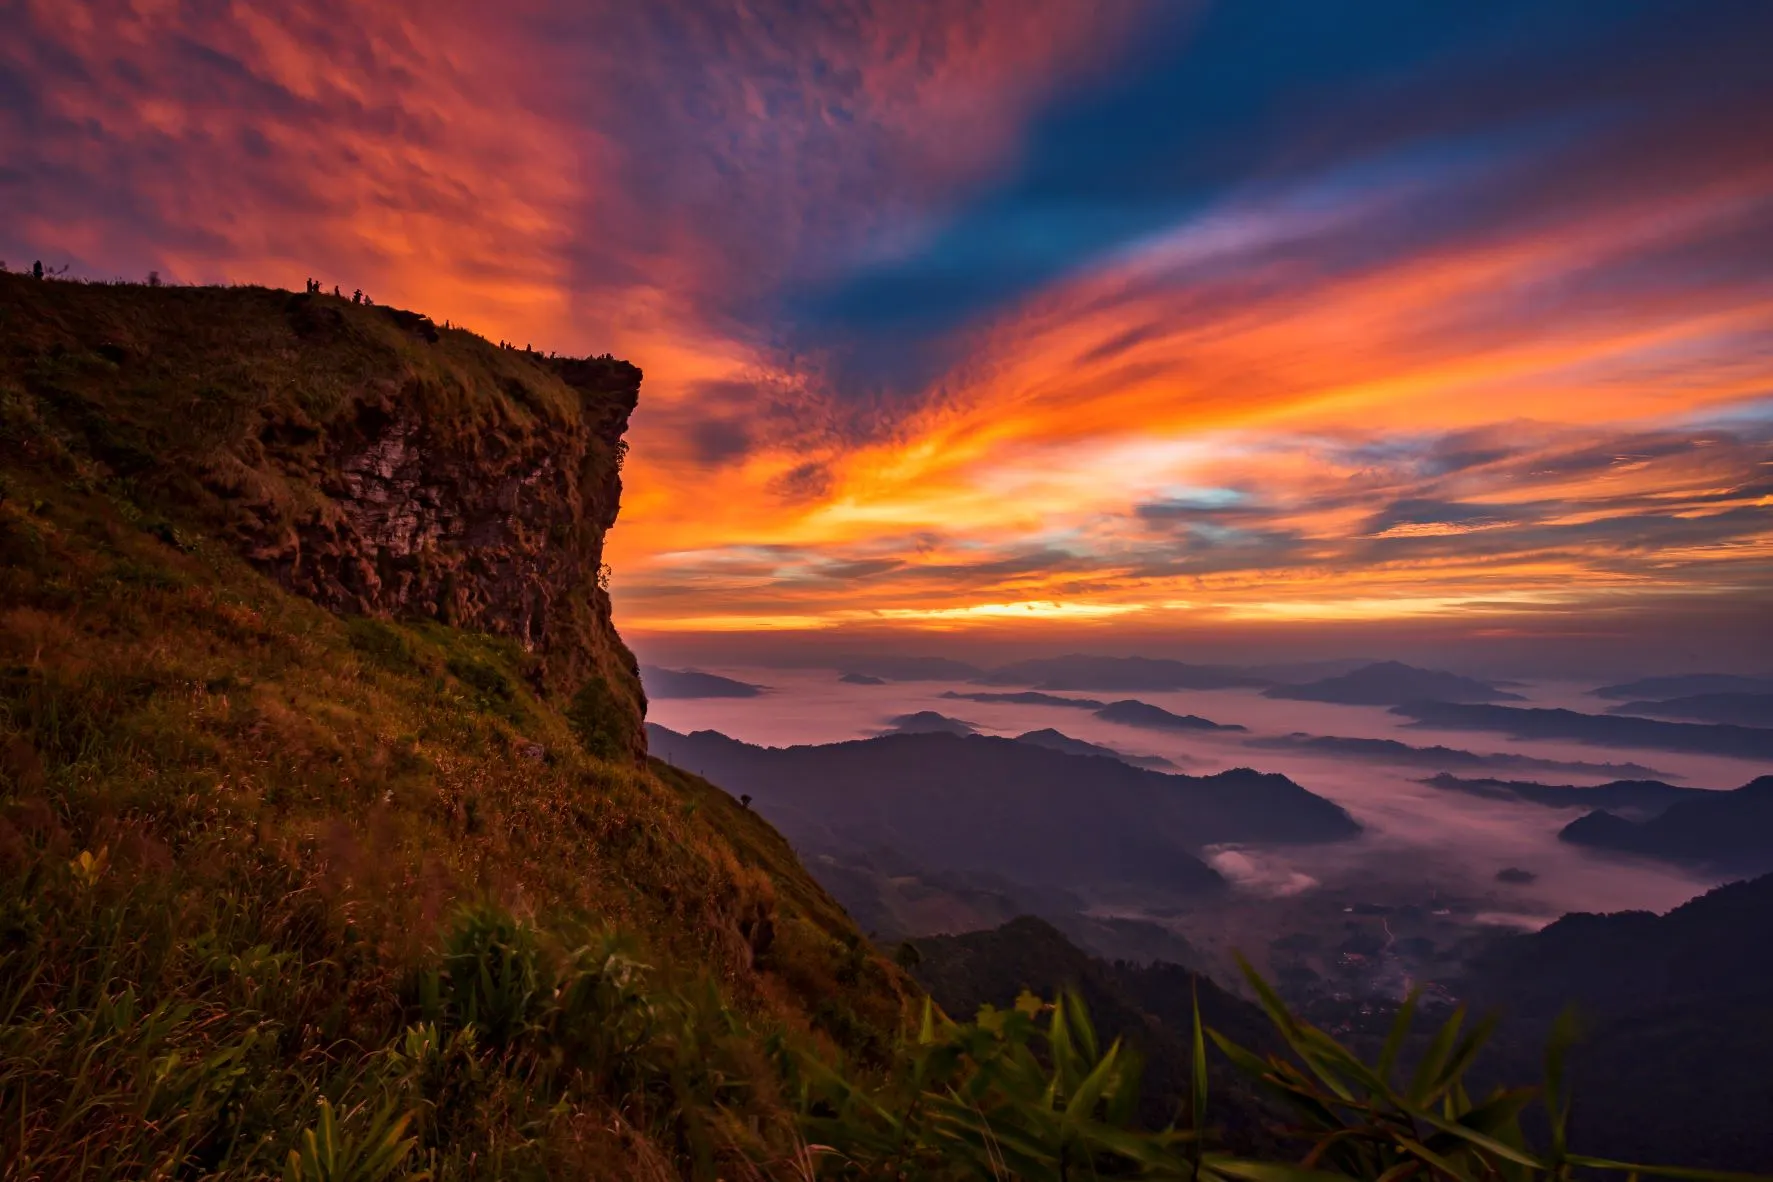 ตำบลบ้านดู่ : อุทยานแห่งชาติภูชี้ฟ้า (Source: การท่องเที่ยวแห่งประเทศไทย)